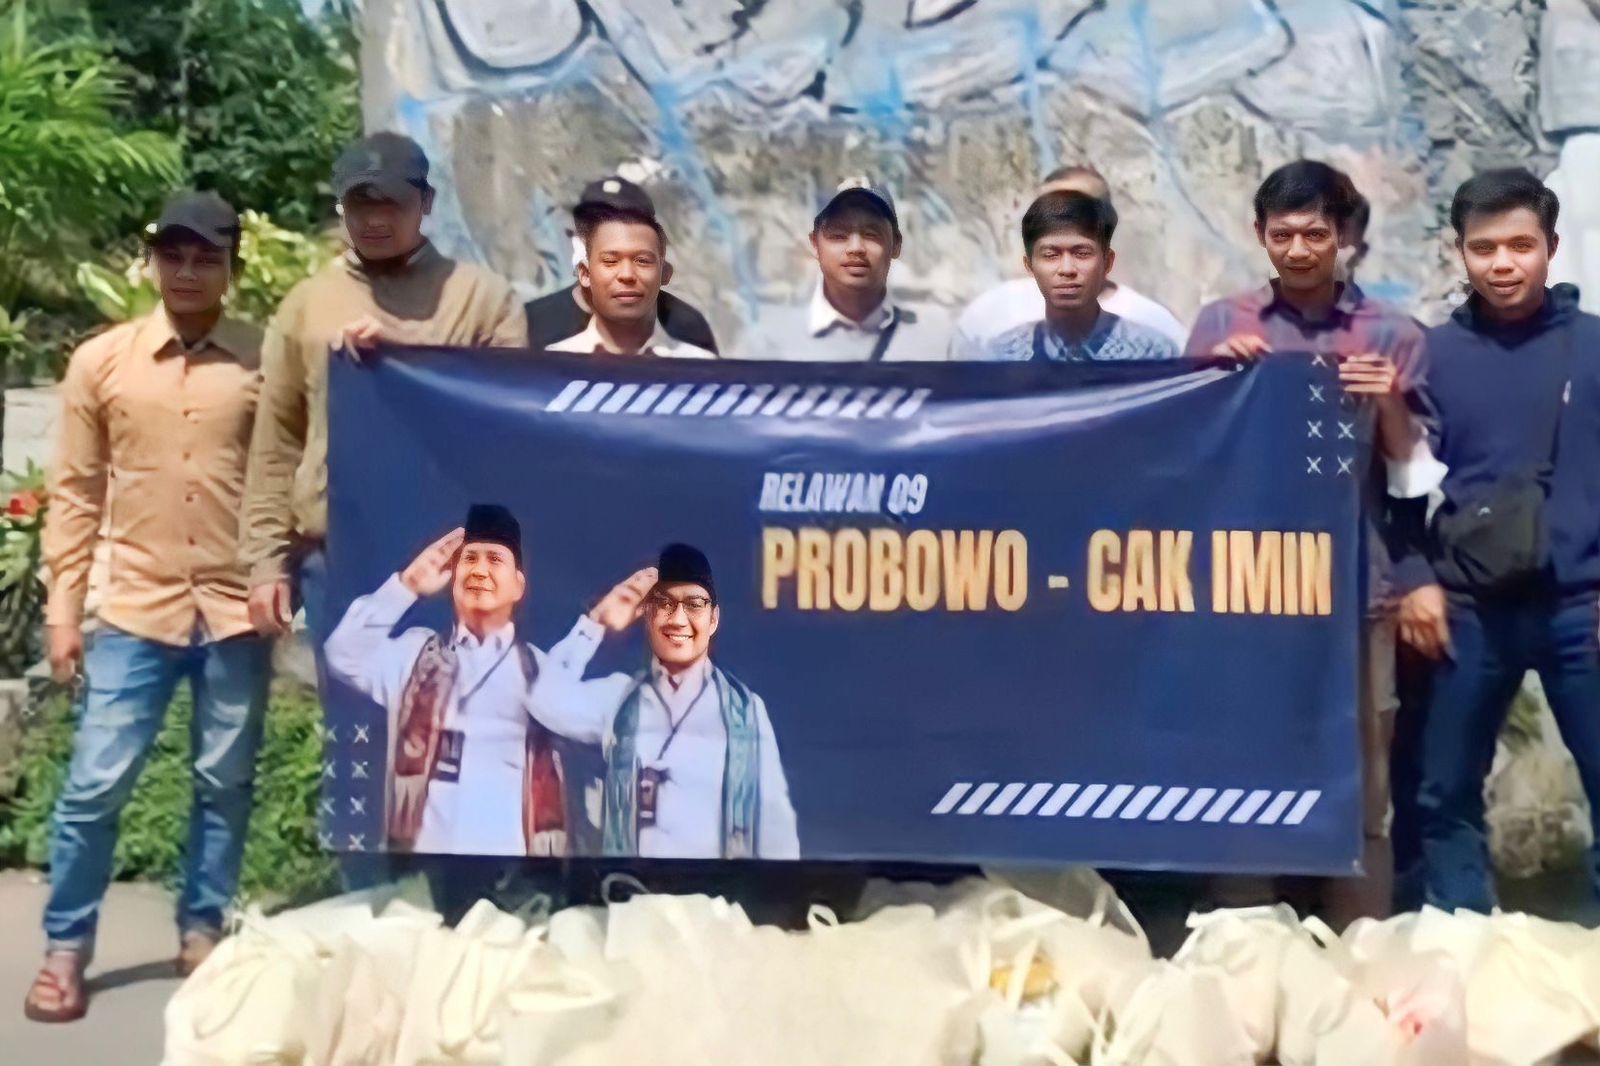 Relawan 09 mendeklarasikan dukungan kepada Ketua Umum Partai Gerindra Prabowo Subianto dan Ketua Umum PKB Abdul Muhaimin Iskandar sebagai pasangan capres-cawapres 2024. (SinPo.id/Dok. Relawan 09)